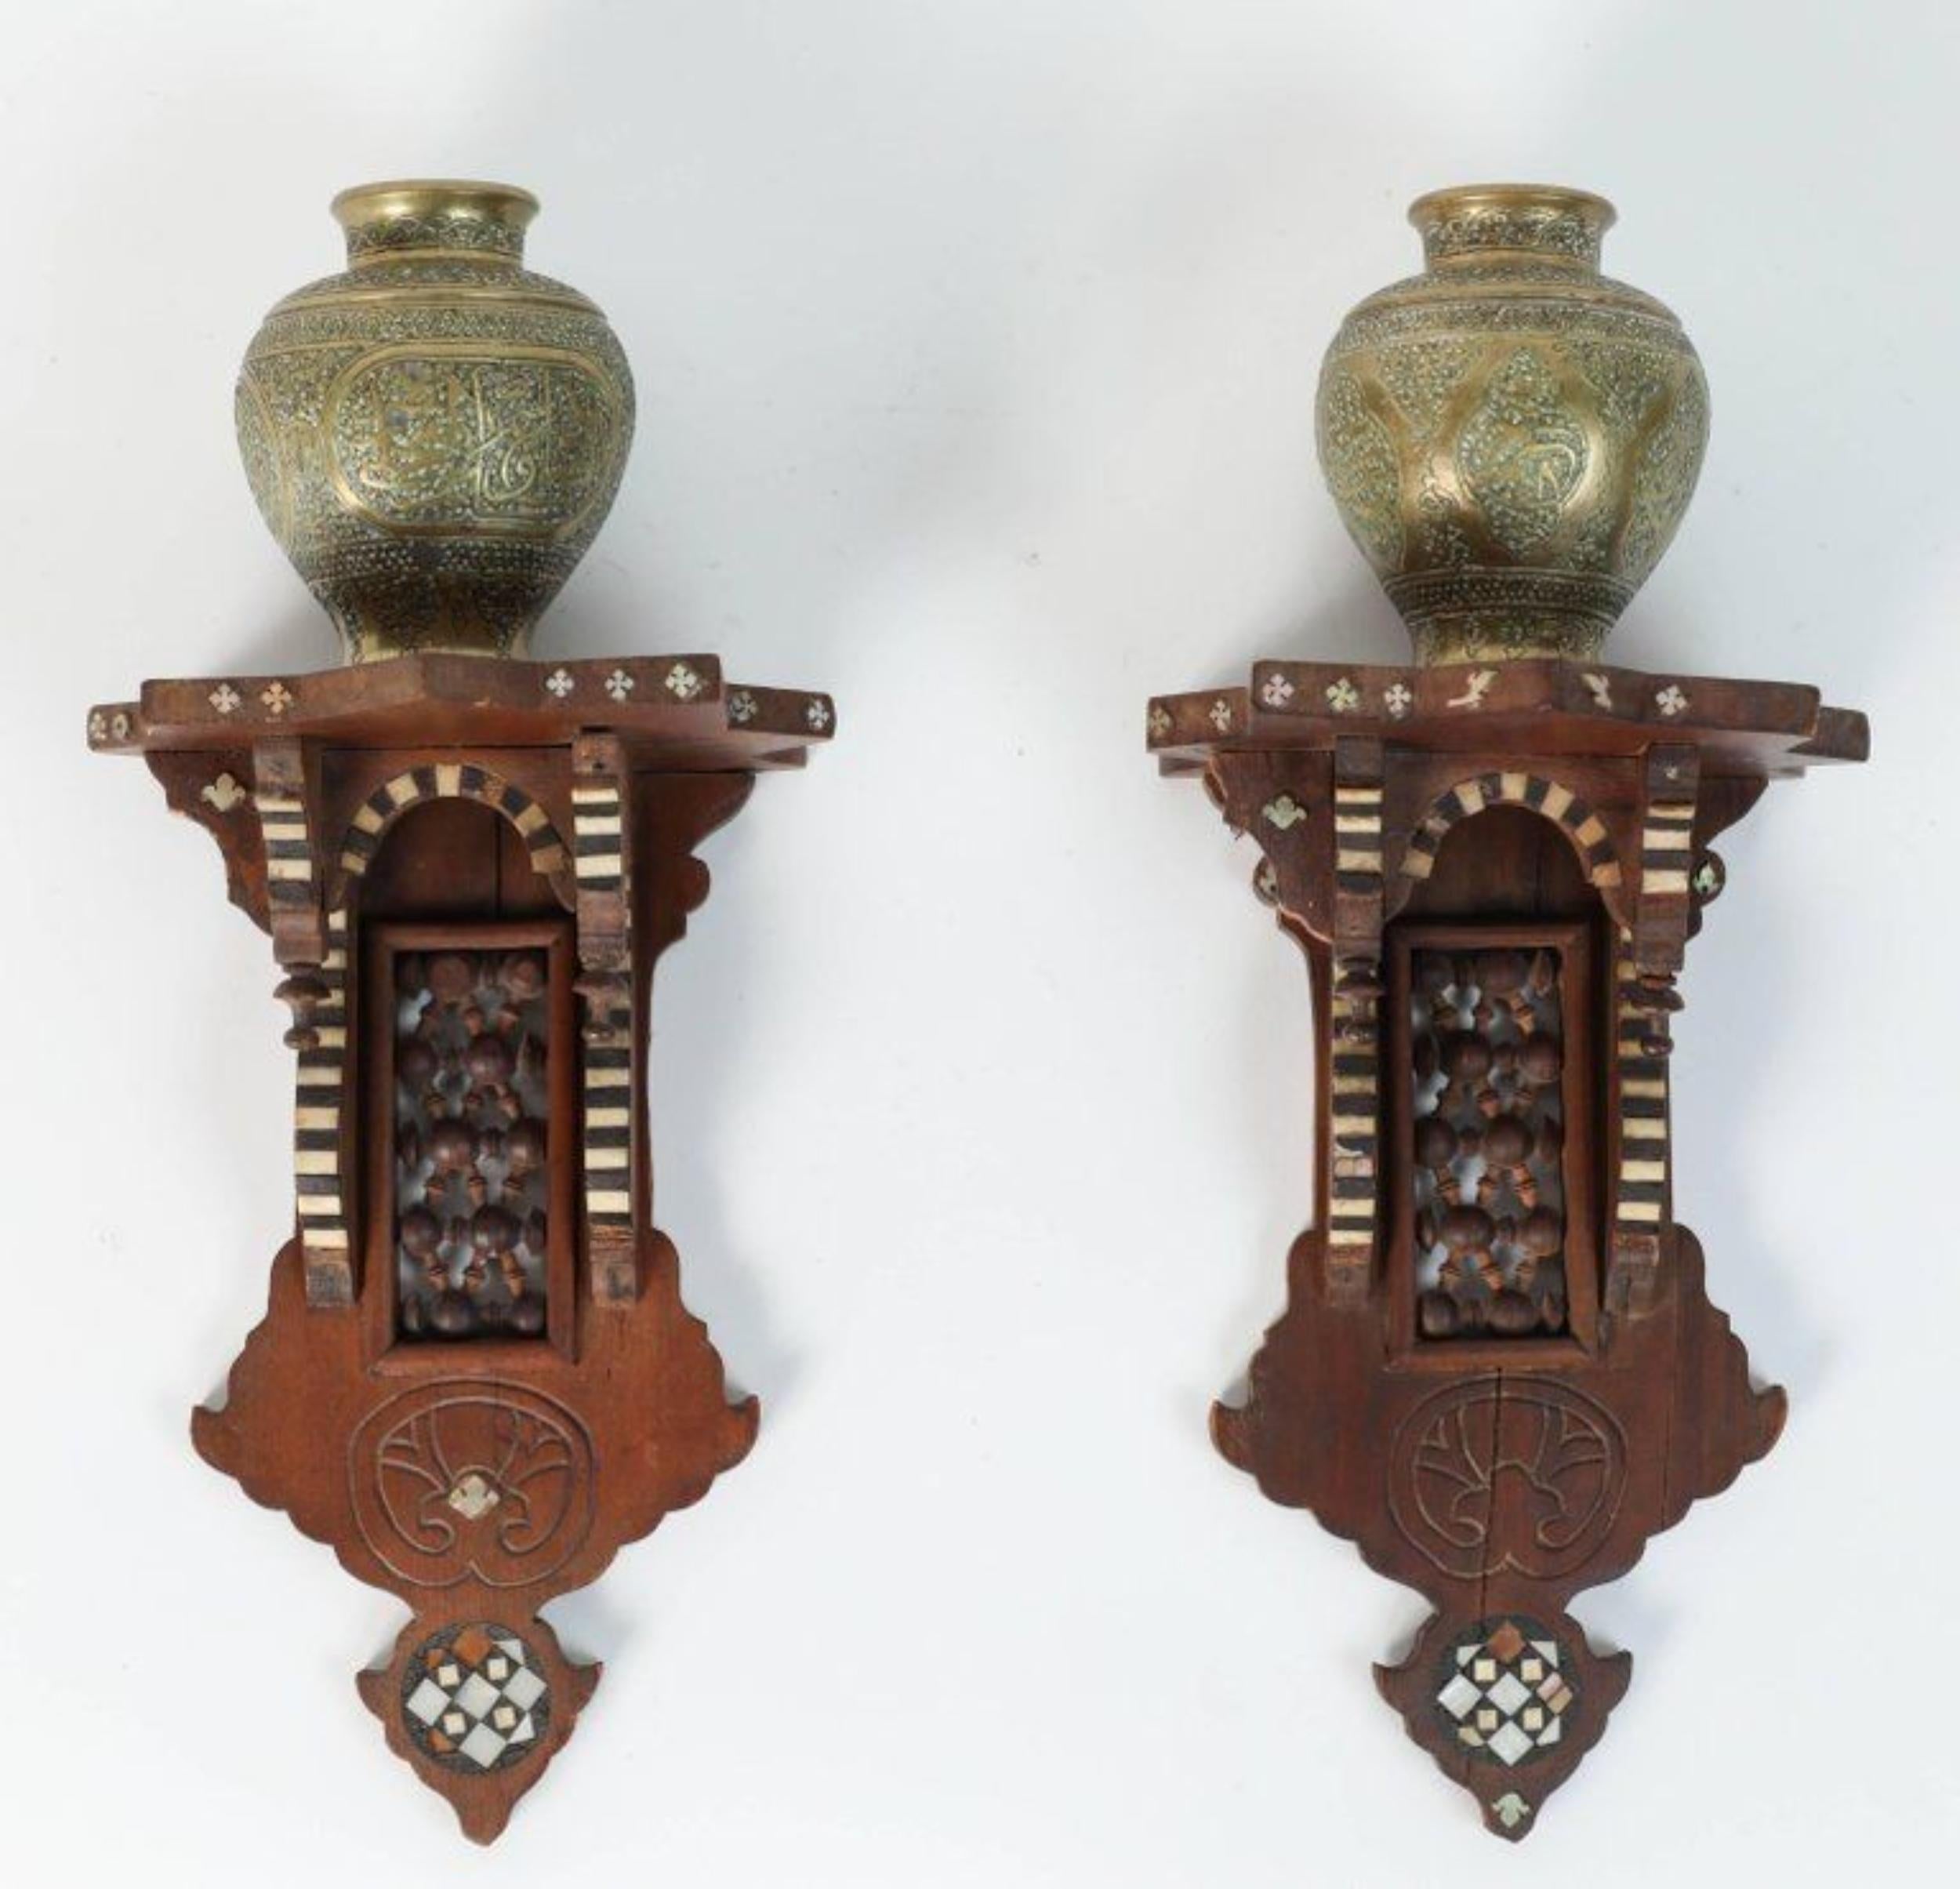 Belle paire de vases persans gravés en laiton Ghalam-zani sur des supports décoratifs muraux en bois du Moyen-Orient.


Les petits vases en laiton sont finement ciselés à la main avec des motifs élaborés et présentés sur des supports en bois